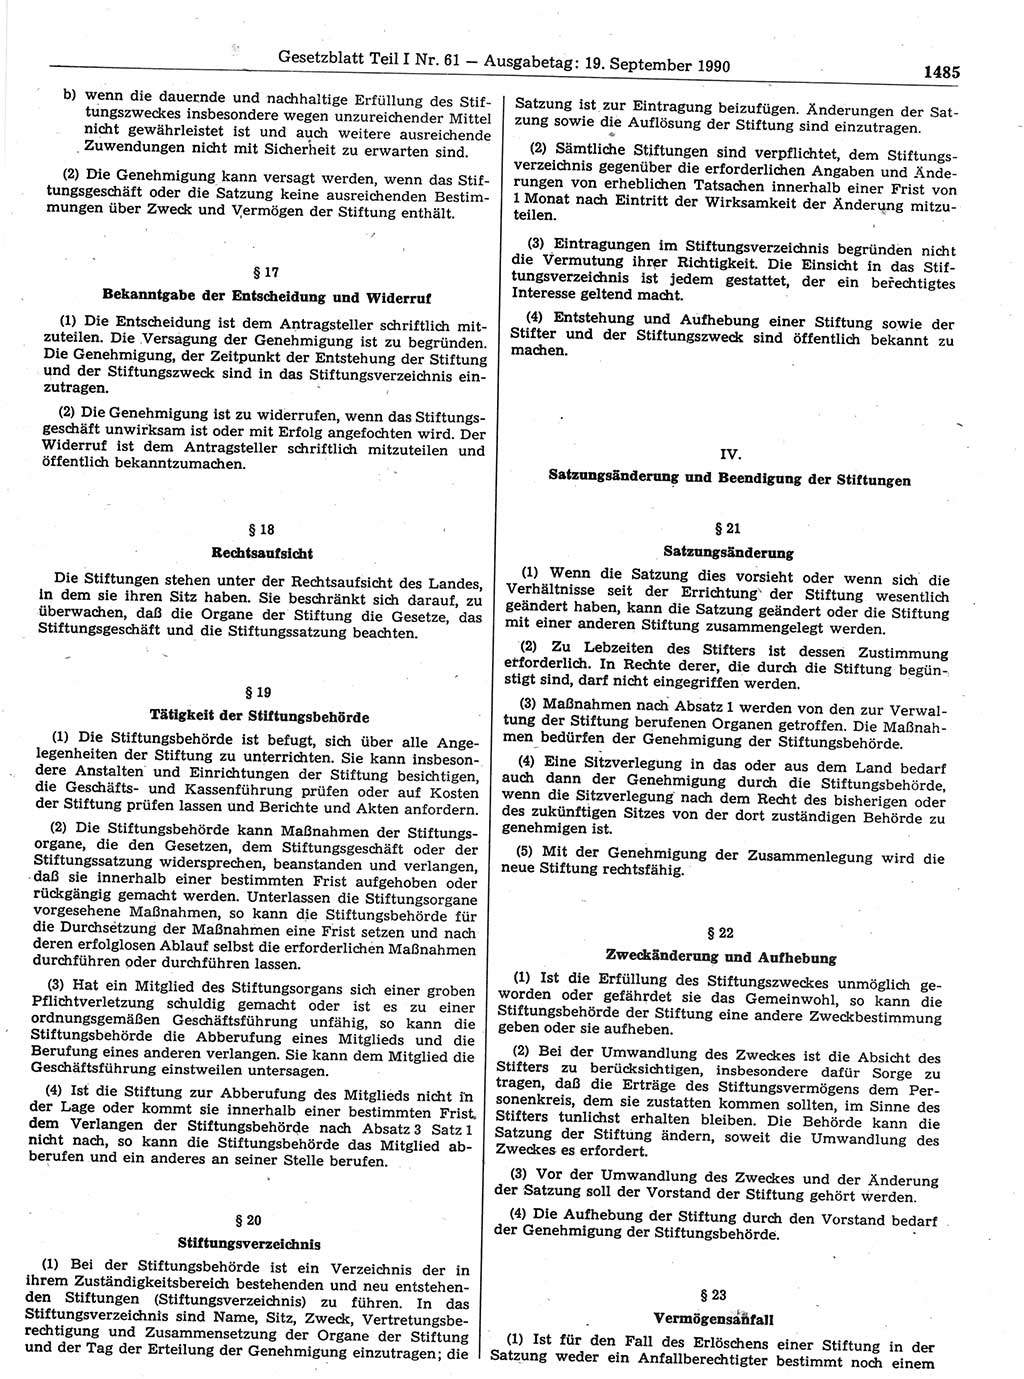 Gesetzblatt (GBl.) der Deutschen Demokratischen Republik (DDR) Teil Ⅰ 1990, Seite 1485 (GBl. DDR Ⅰ 1990, S. 1485)